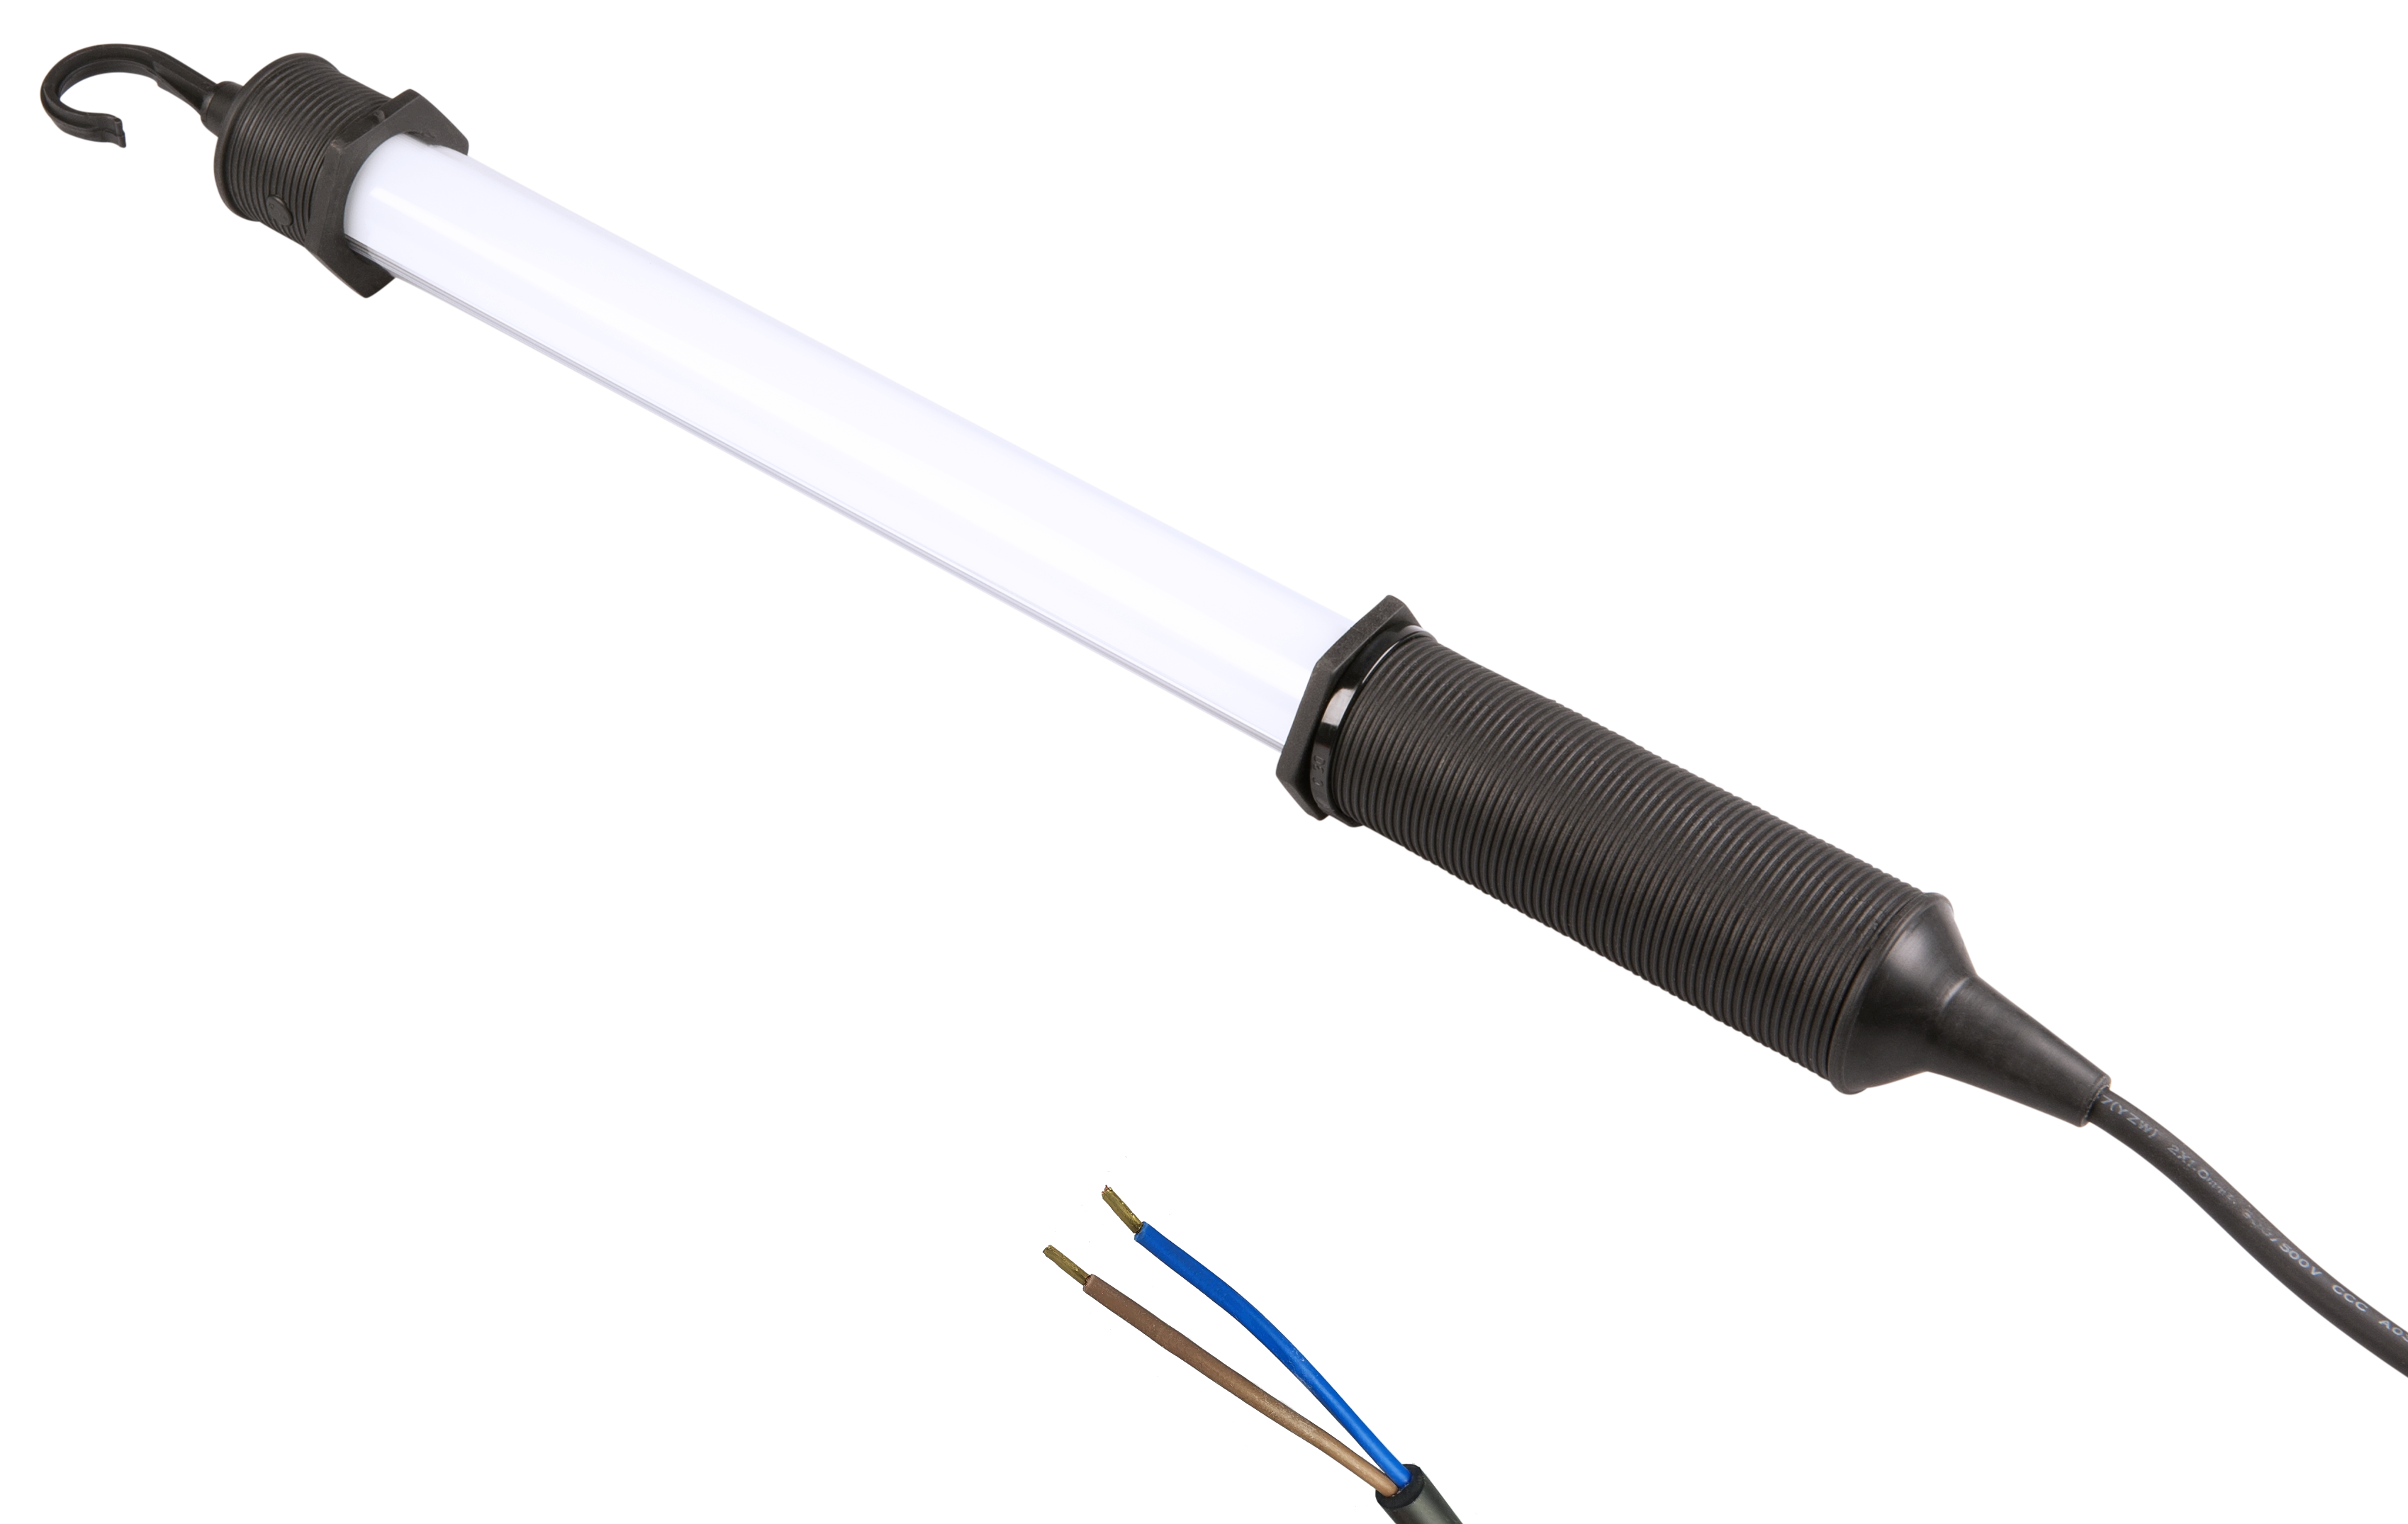 Profi-Lux LED - 7 W - 480 lm -12 Volt DC with crimp sleeves